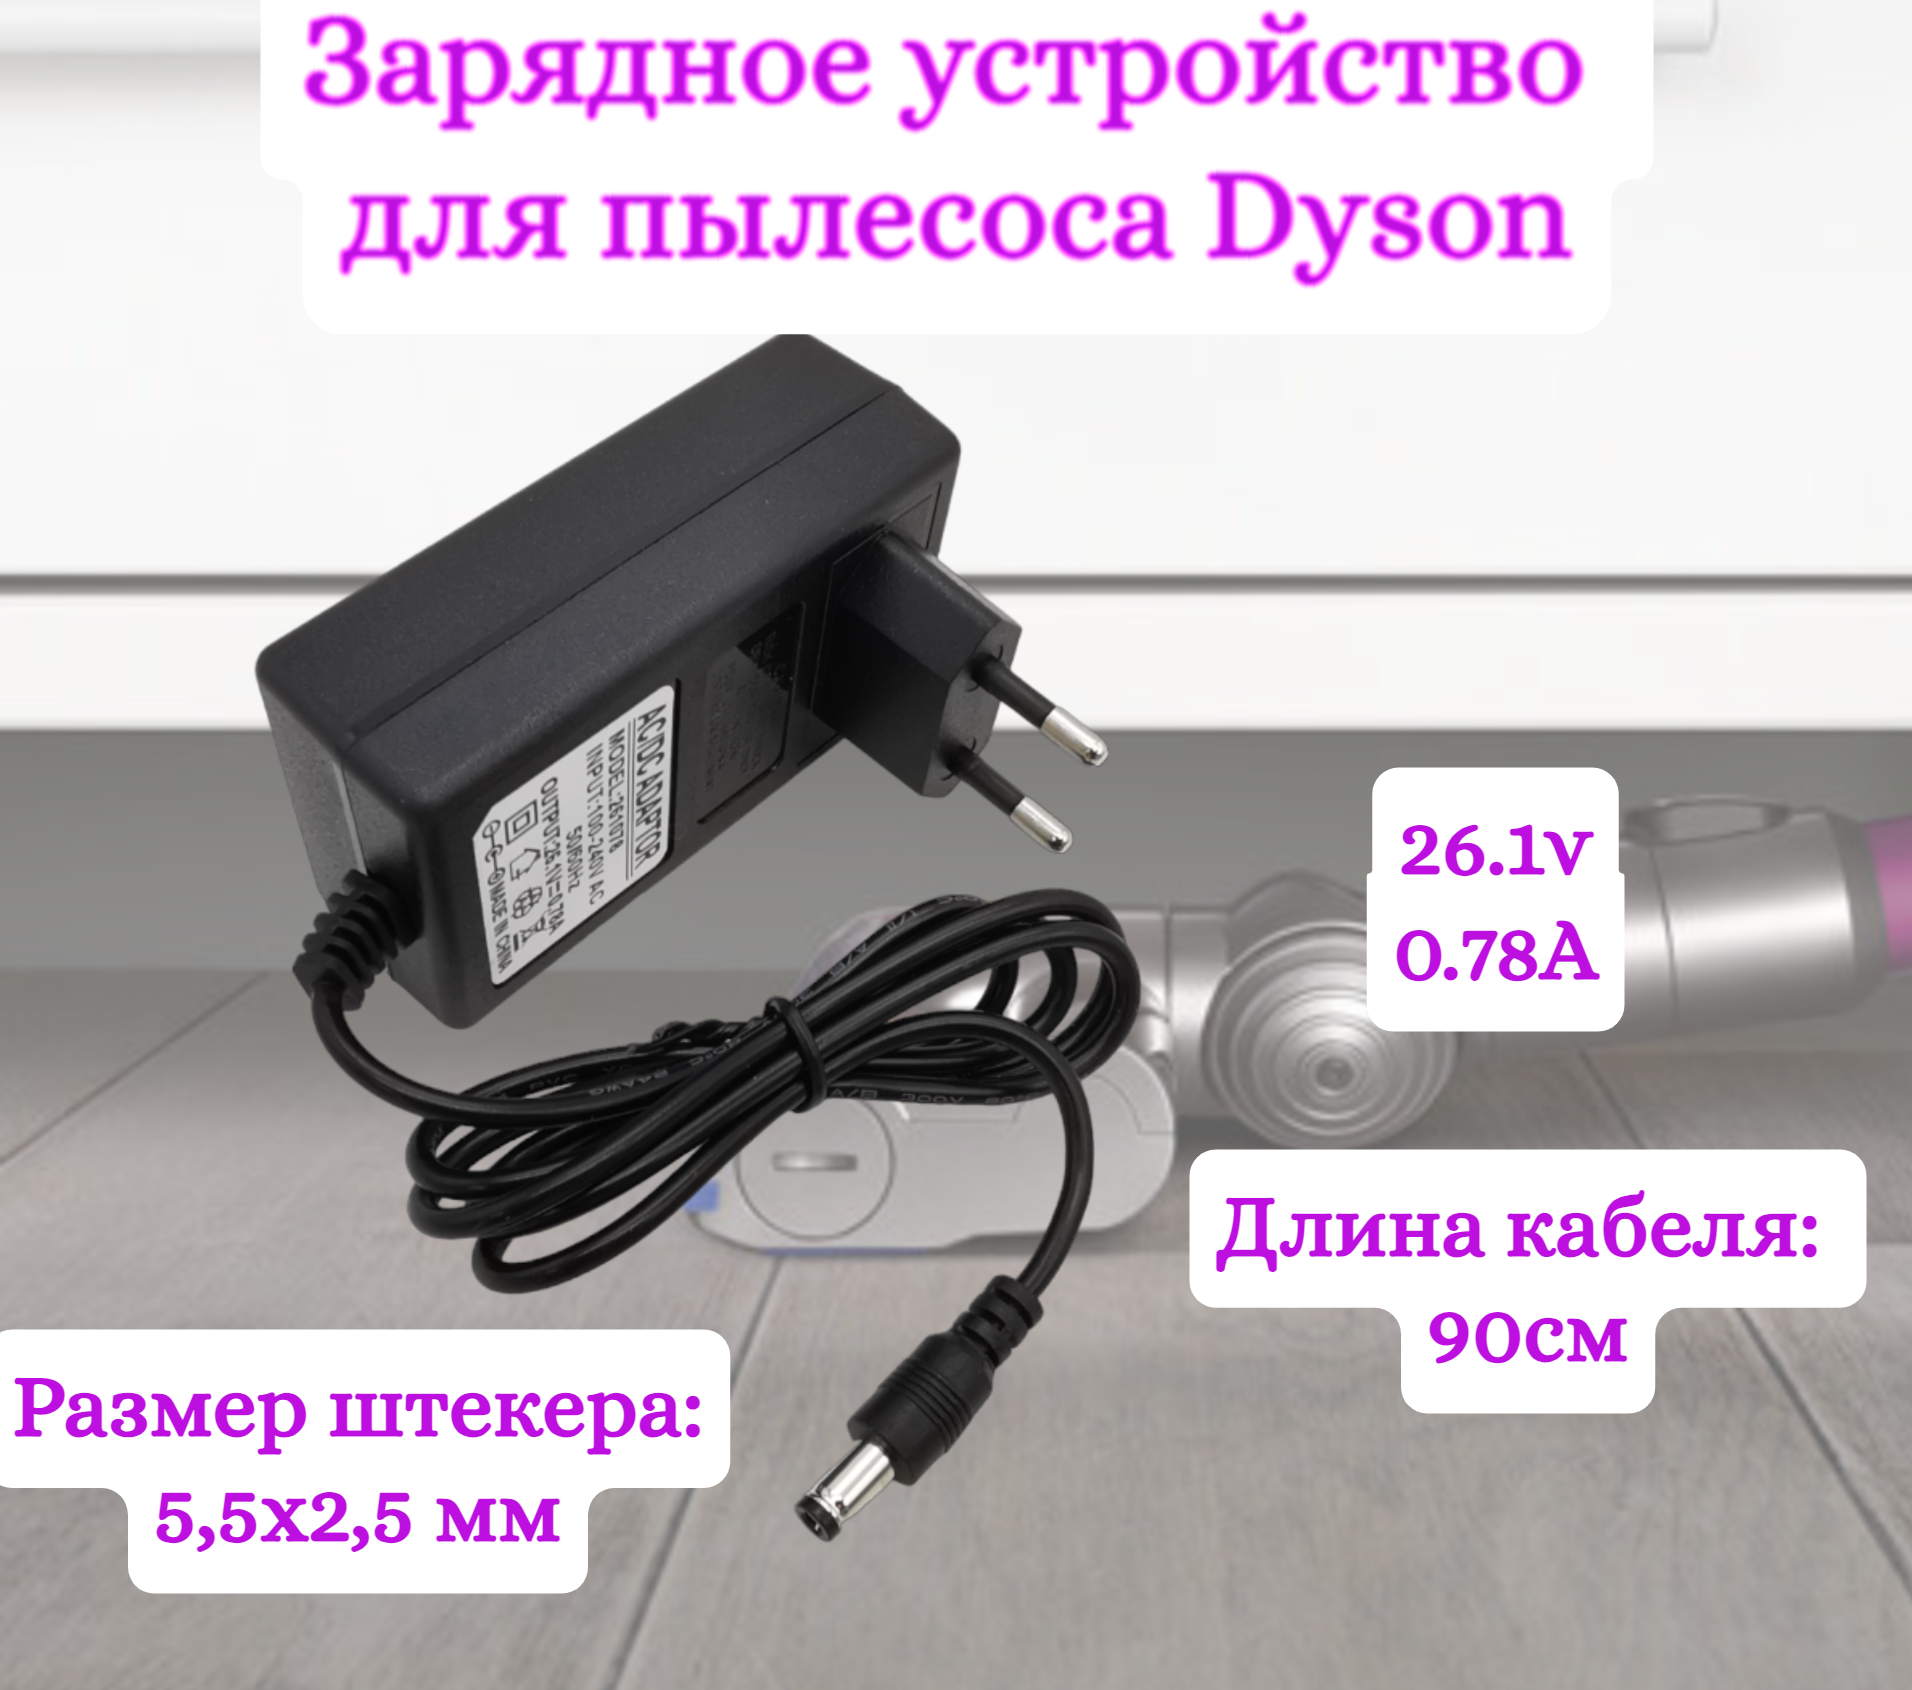 Зарядное устройство для пылесосов Helpico AC-DC 26.1v 0.78A 5.5x2.5mm зарядное устройство run energy для пылесоса dyson v6 v7 v8 dc62 и др